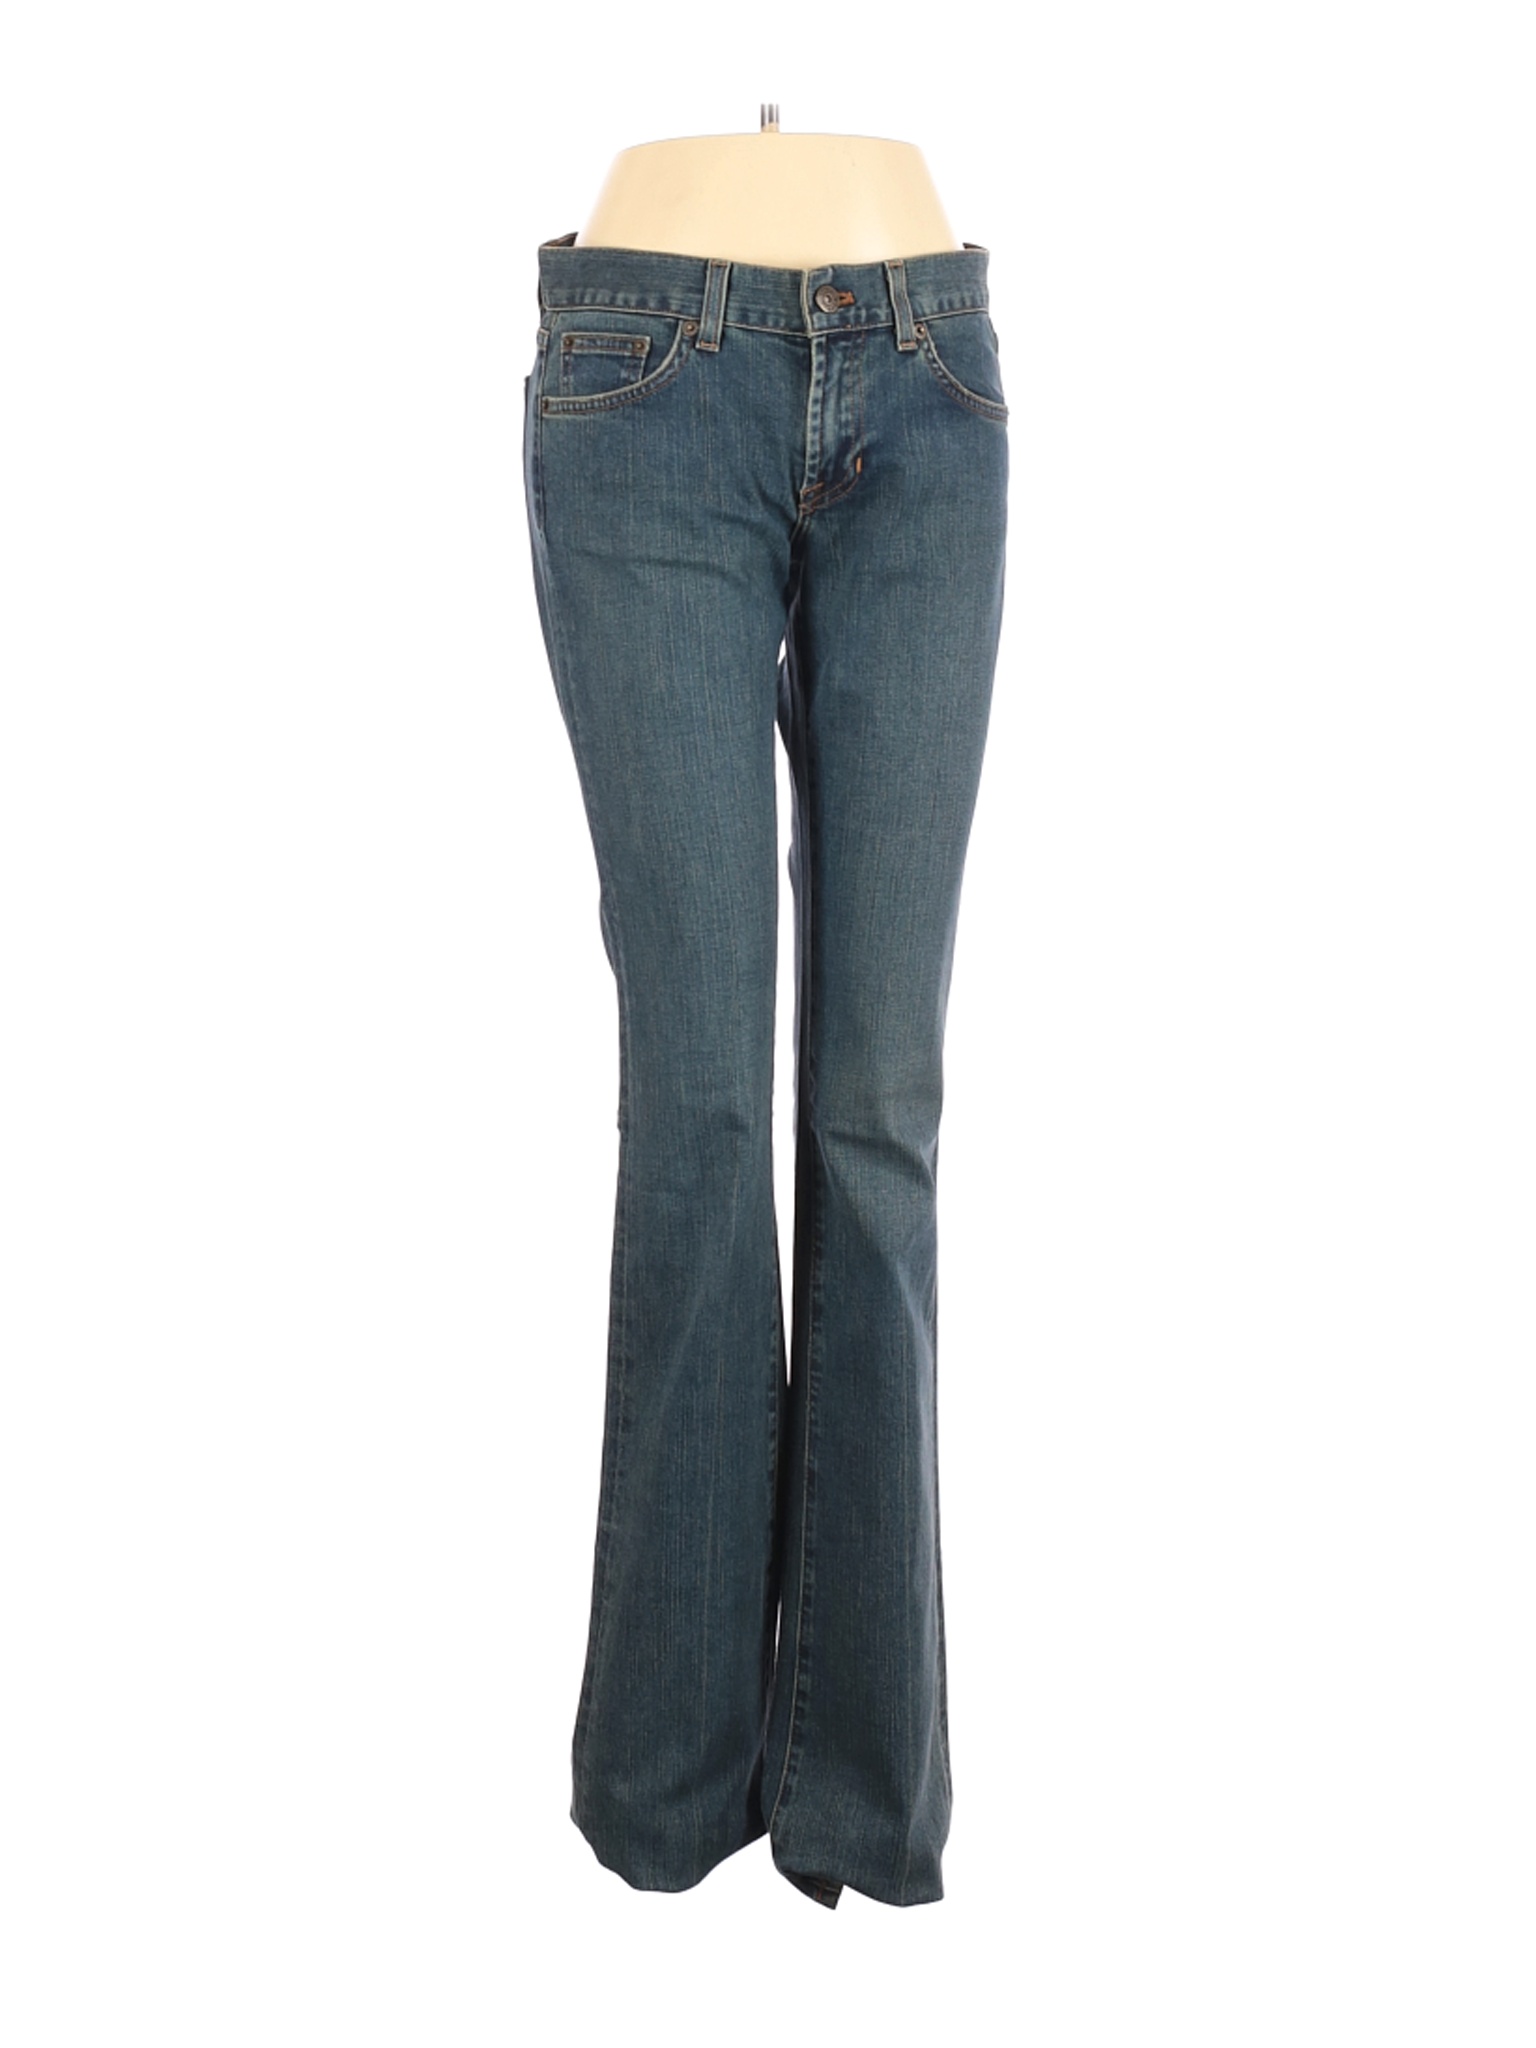 Ralph Lauren Women Blue Jeans 29W | eBay